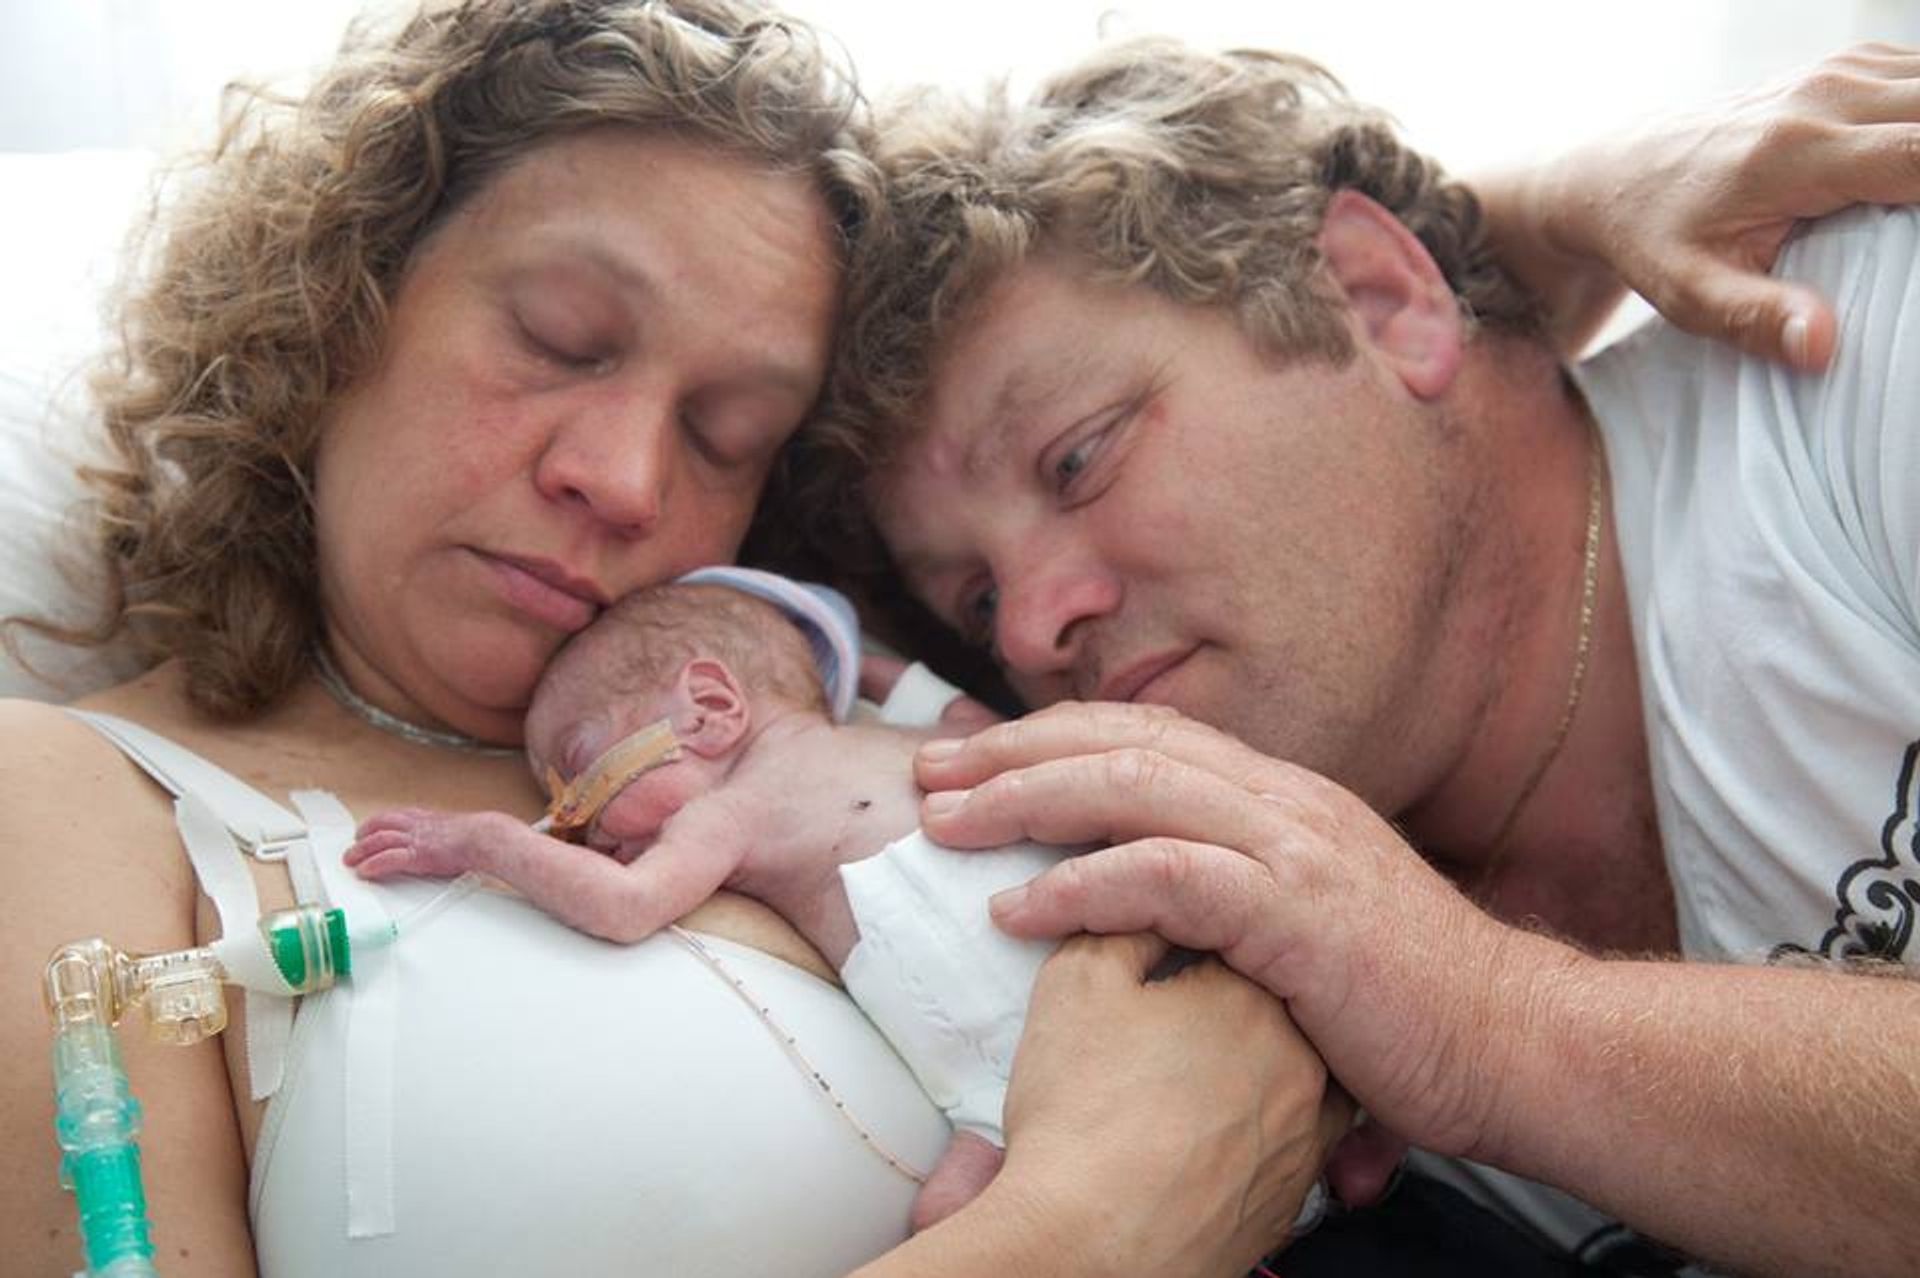 De laatste foto van baby Patrick, samen met zijn trotse ouders